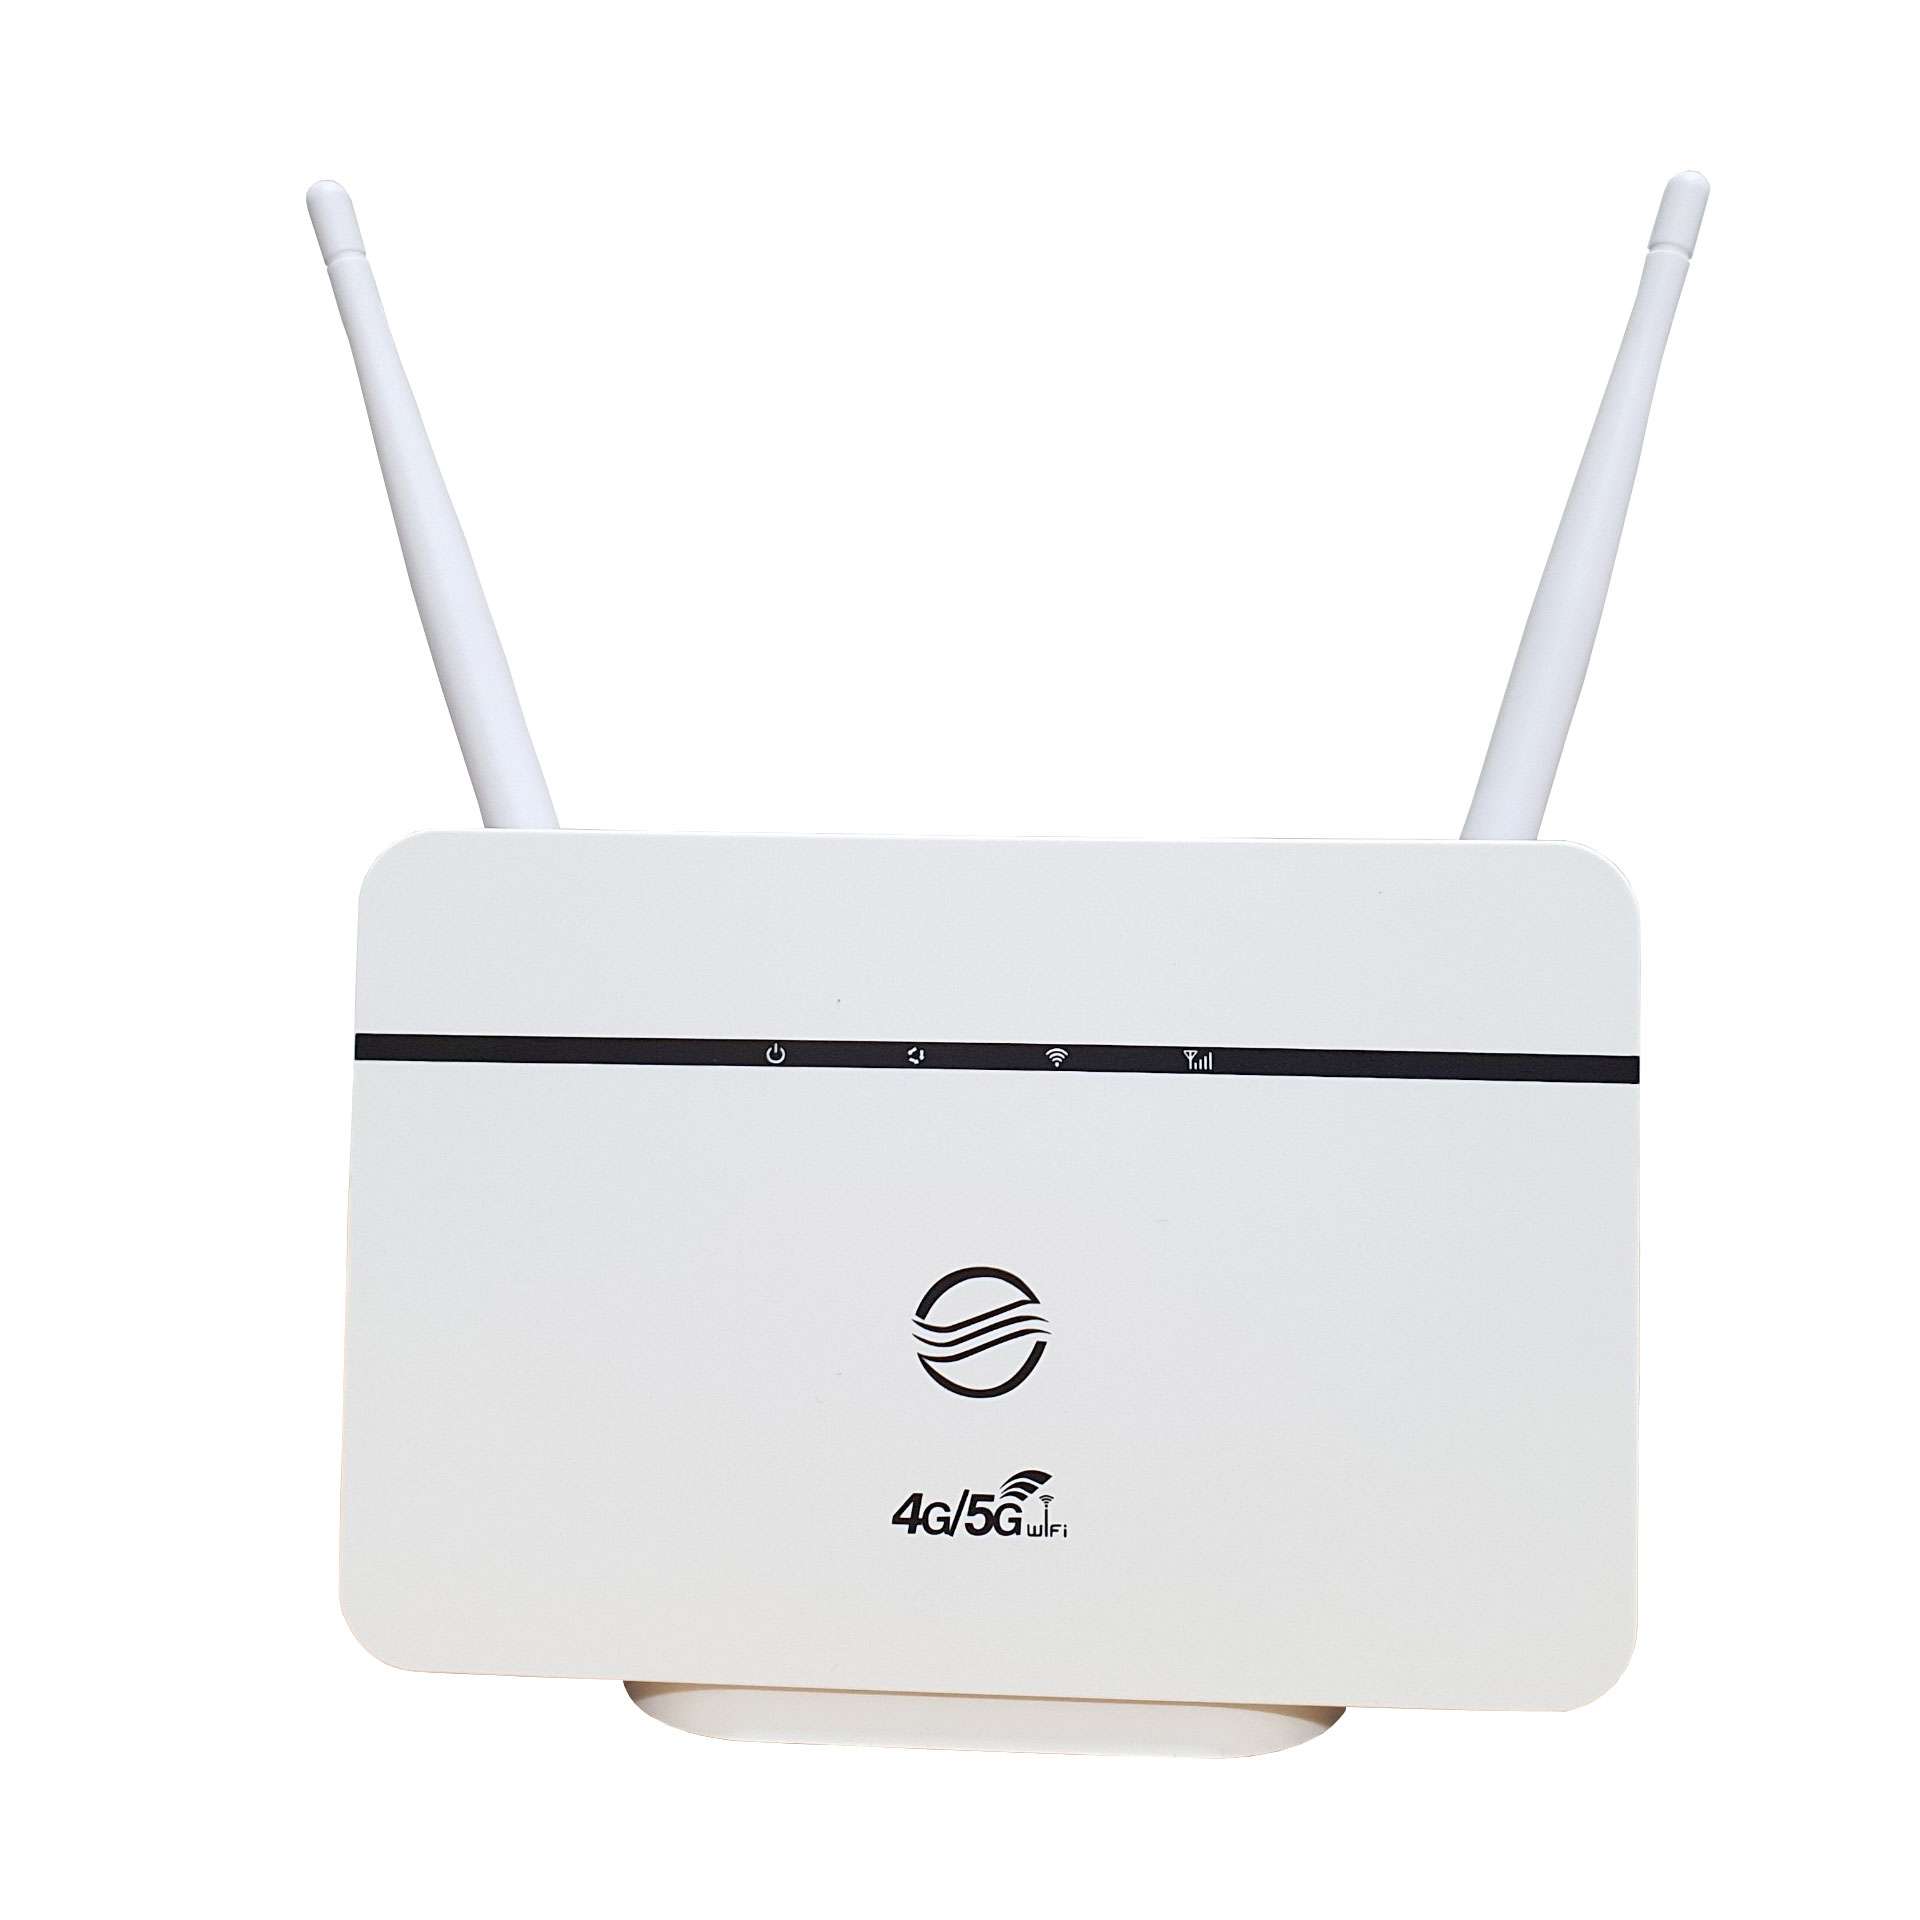 Bộ Phát Wifi 3G/4G CPE RS860, Tốc độ150Mbps – Kết nối 10 user - Hỗ trợ 1 cổng LAN/WAN